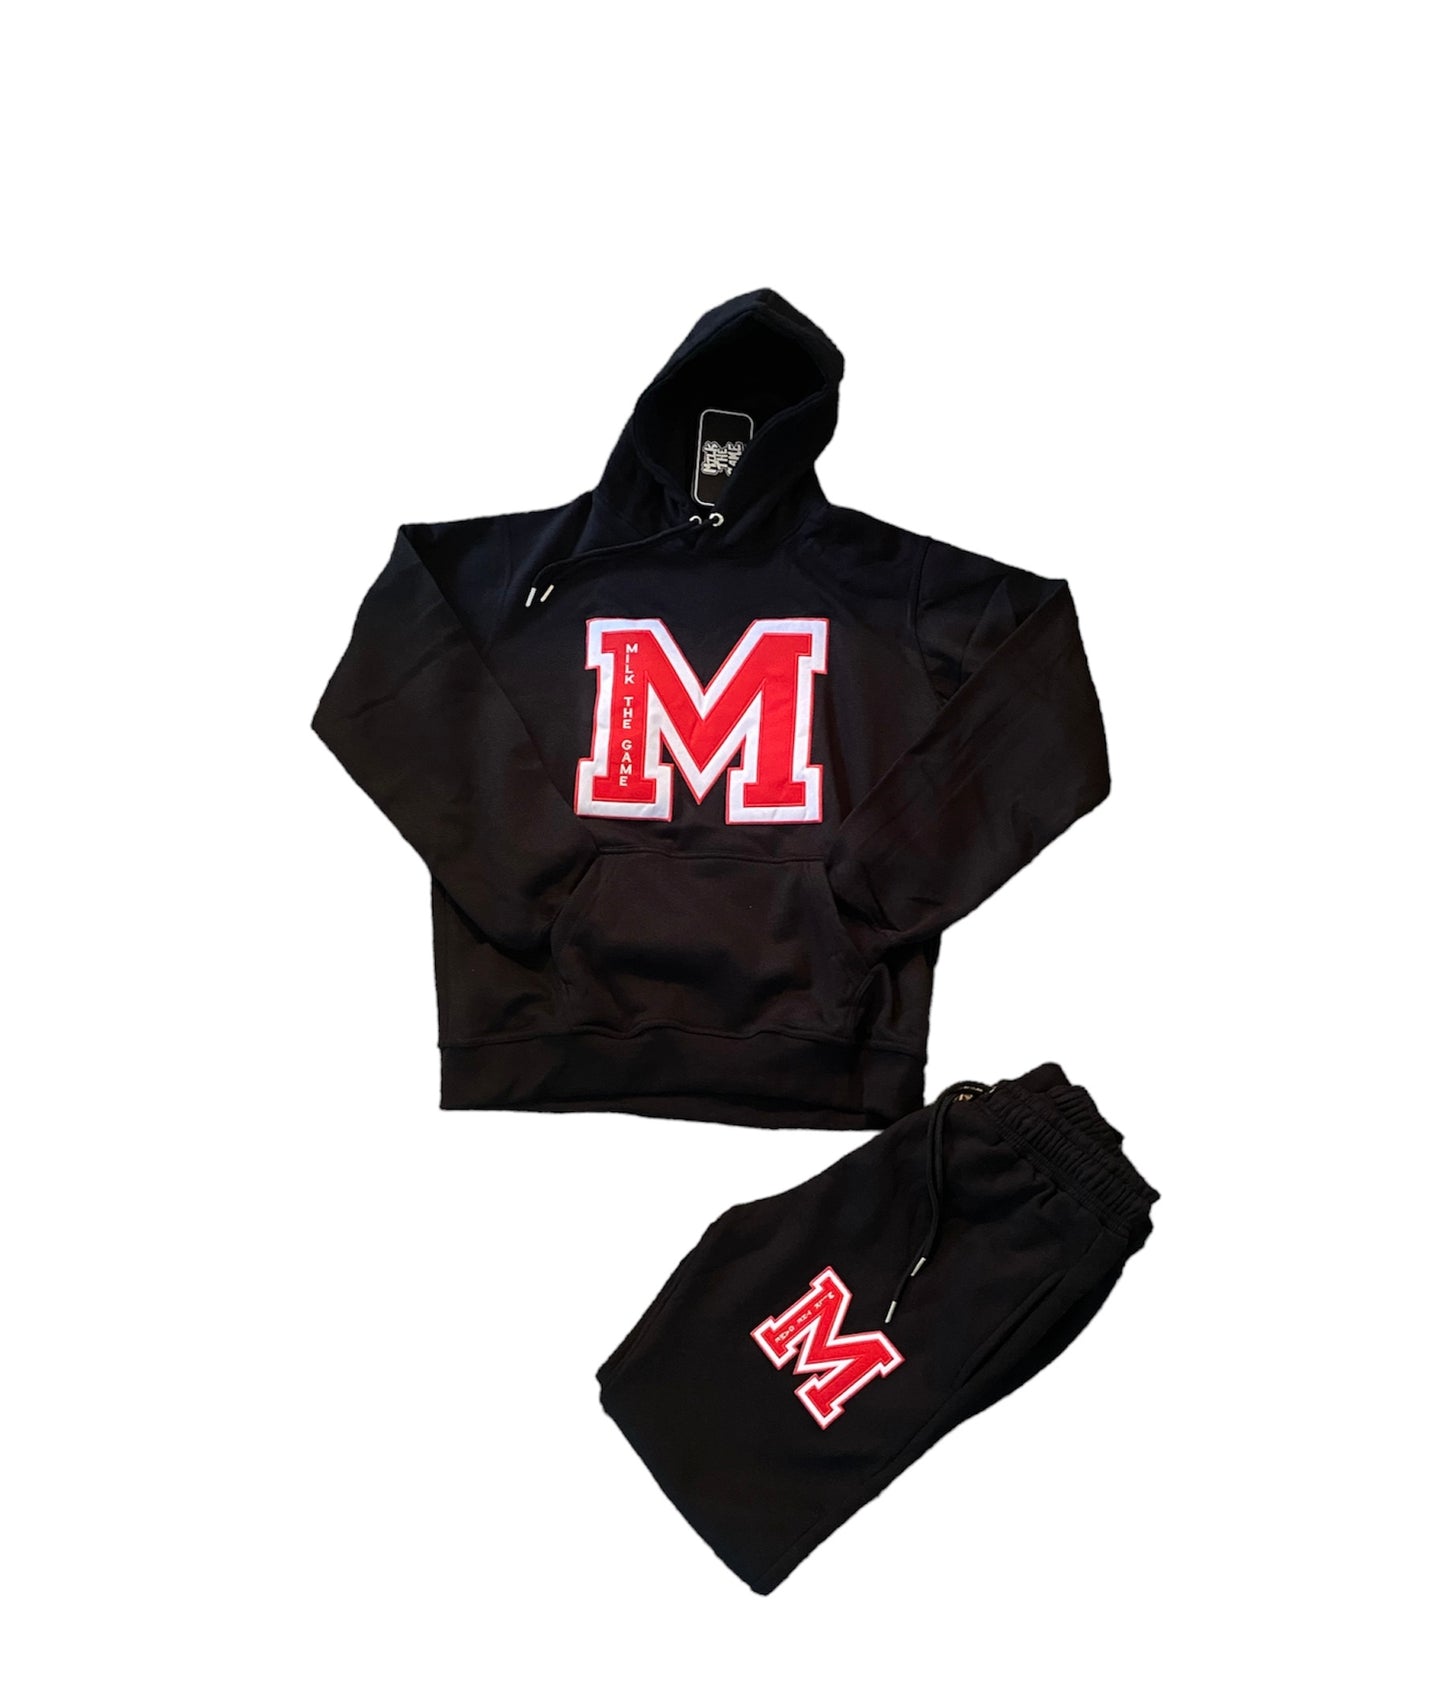 Black and Red Collegiate M jumpsuit